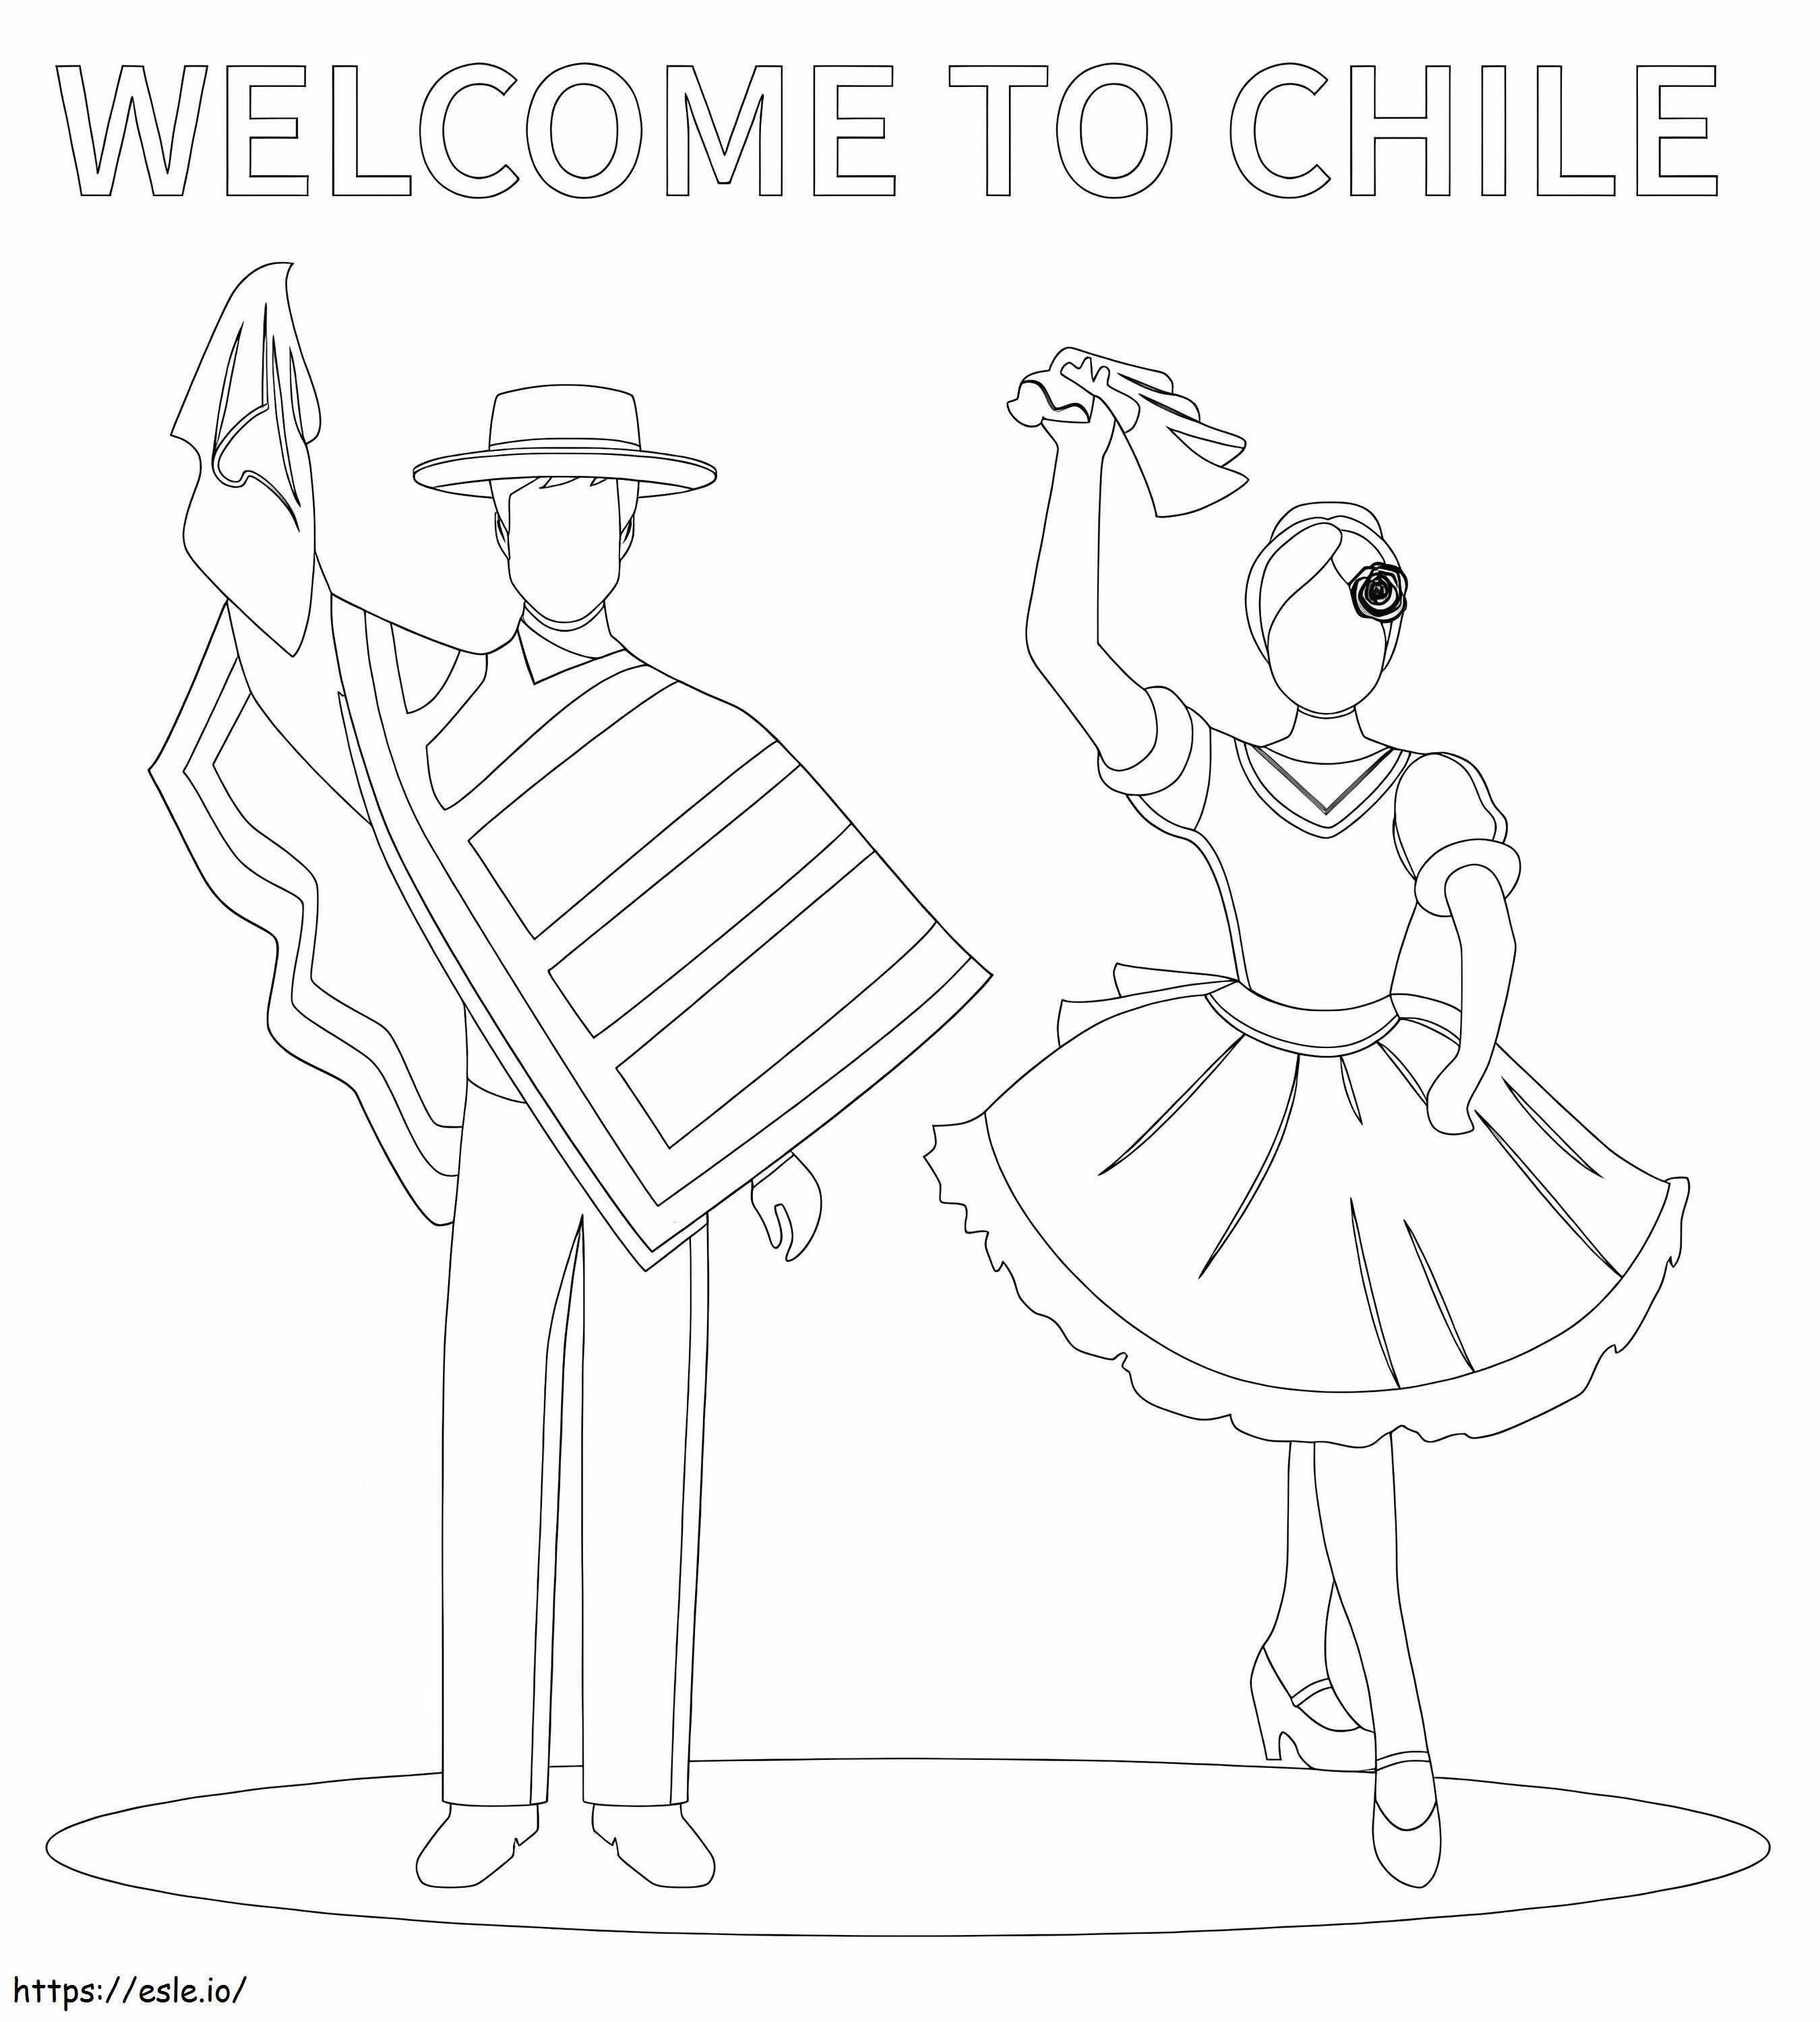 Bun venit în Chile de colorat